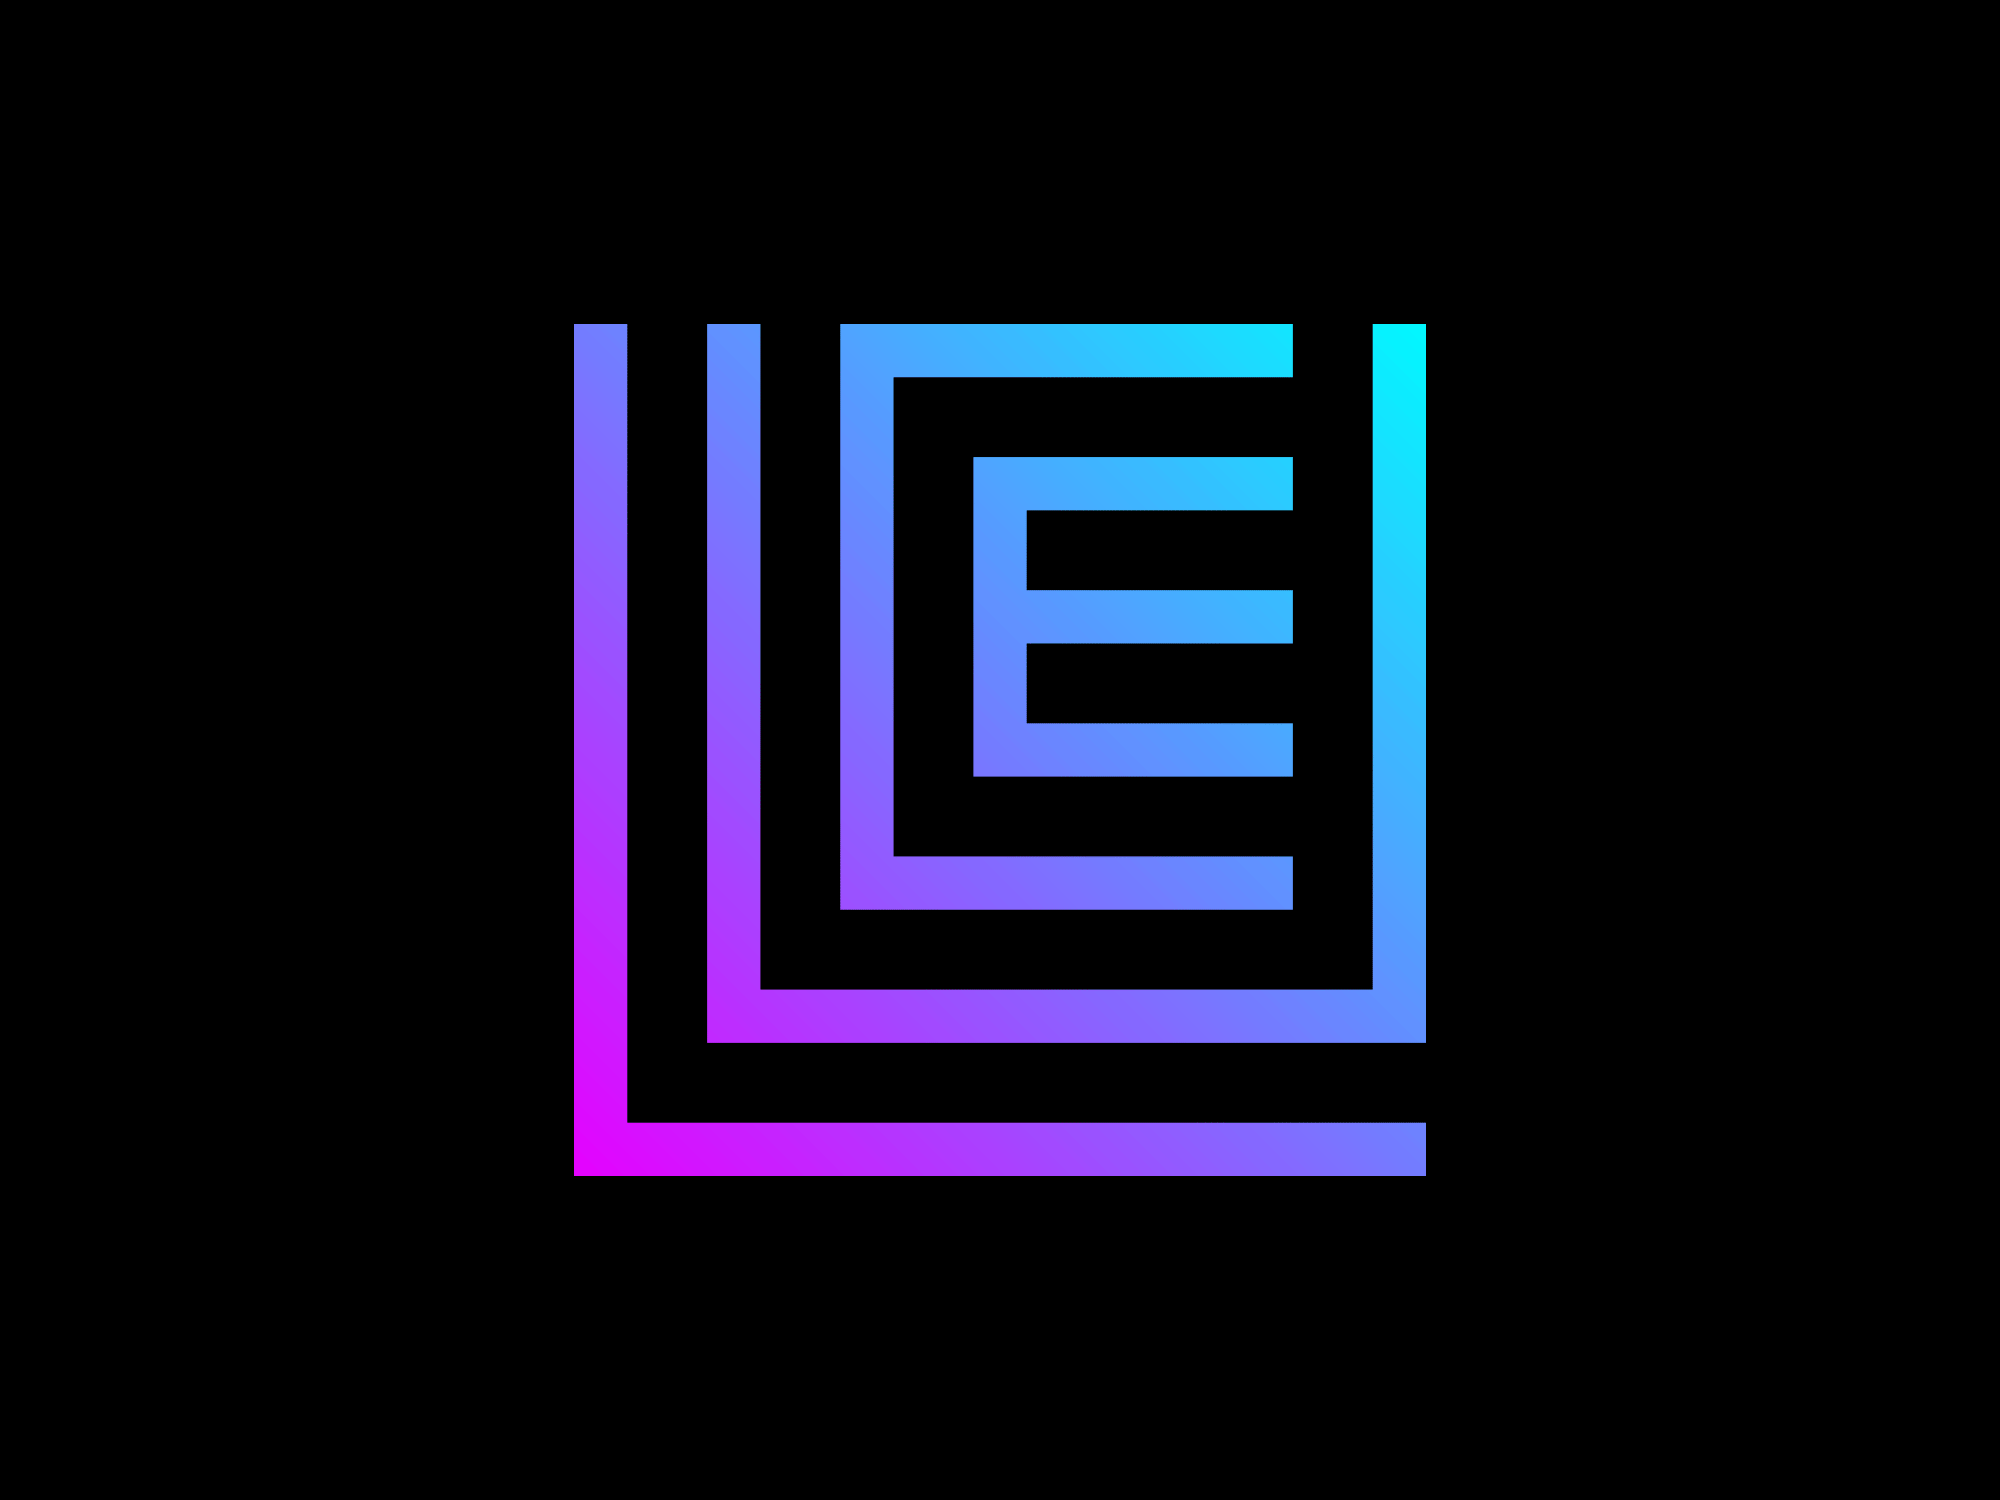 LUEC brand identity branding design graphic graphic design identity lettering logo logotype monogram typography wordmark